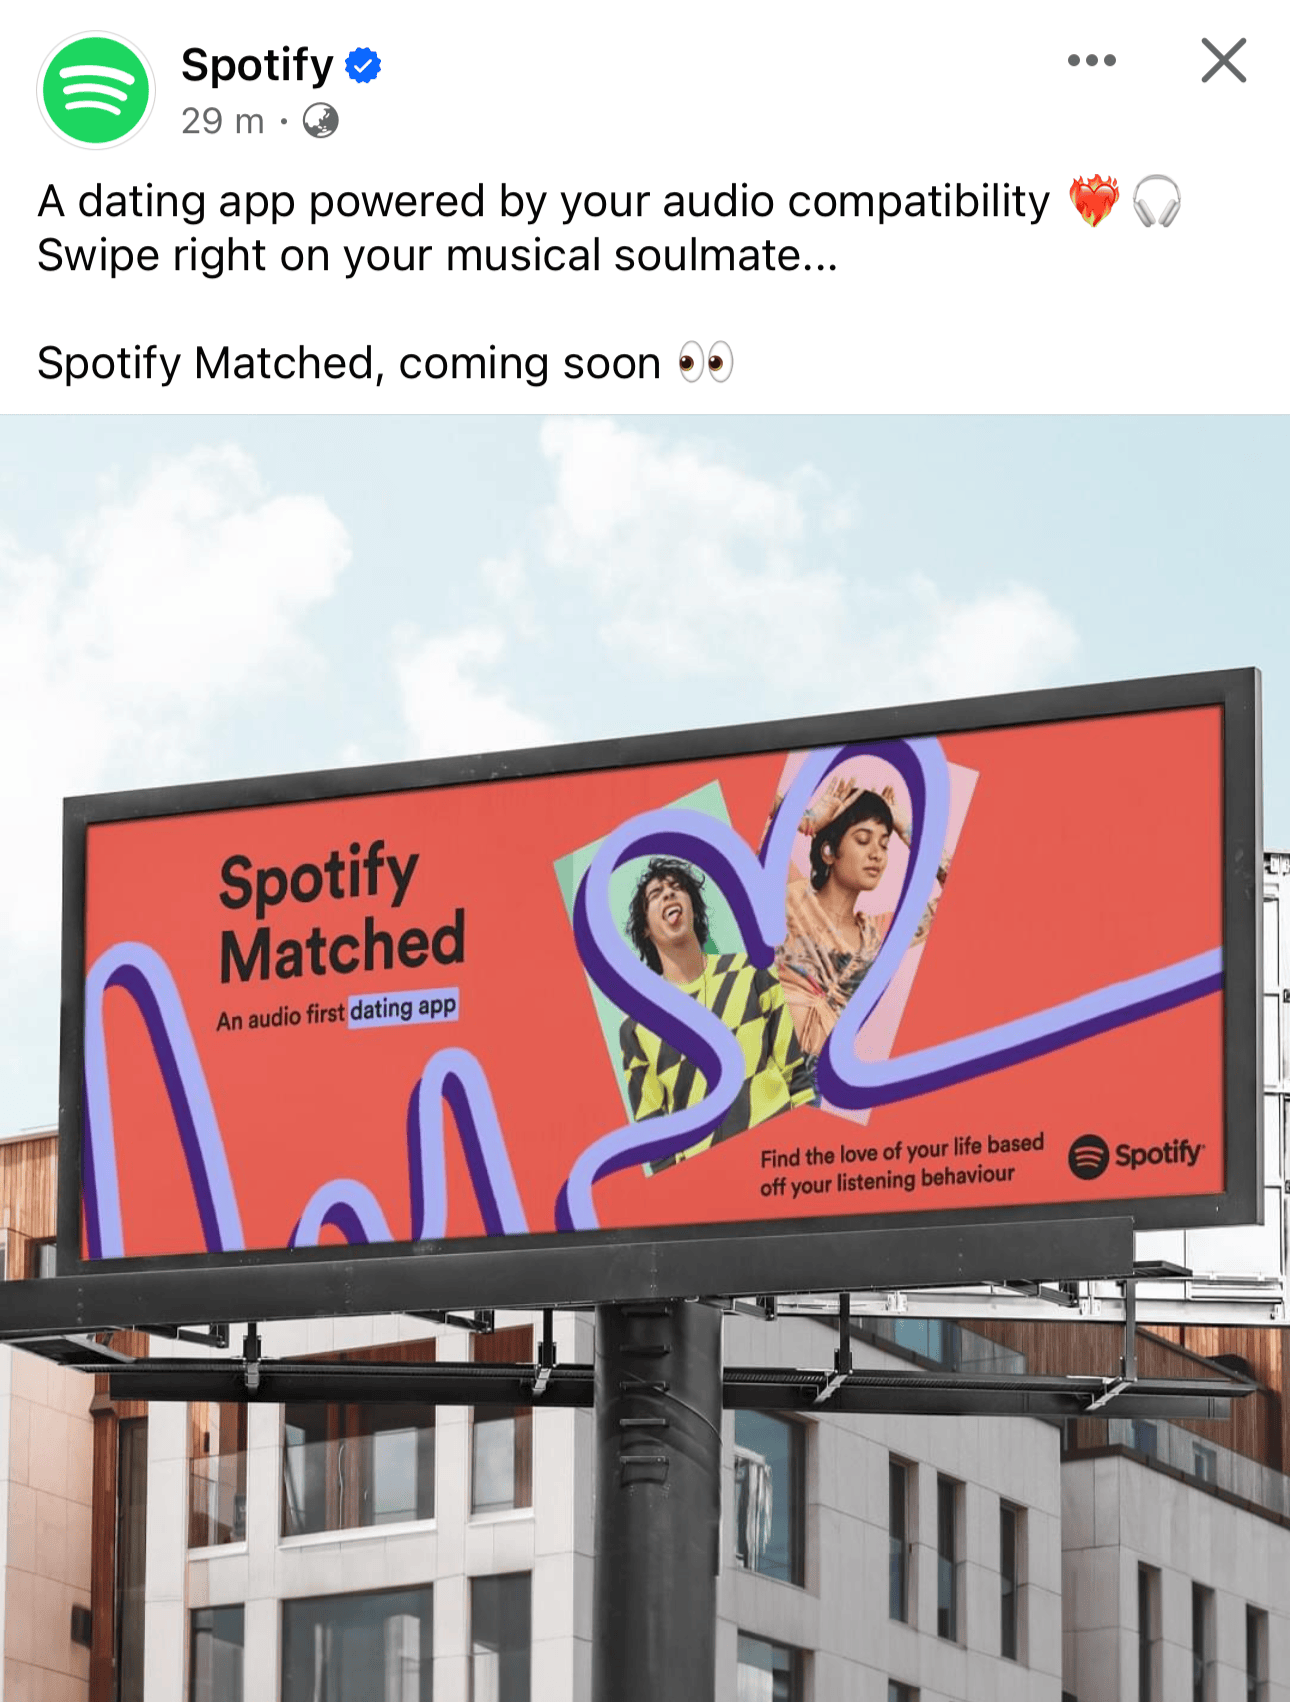 An April fools joke from Spotify